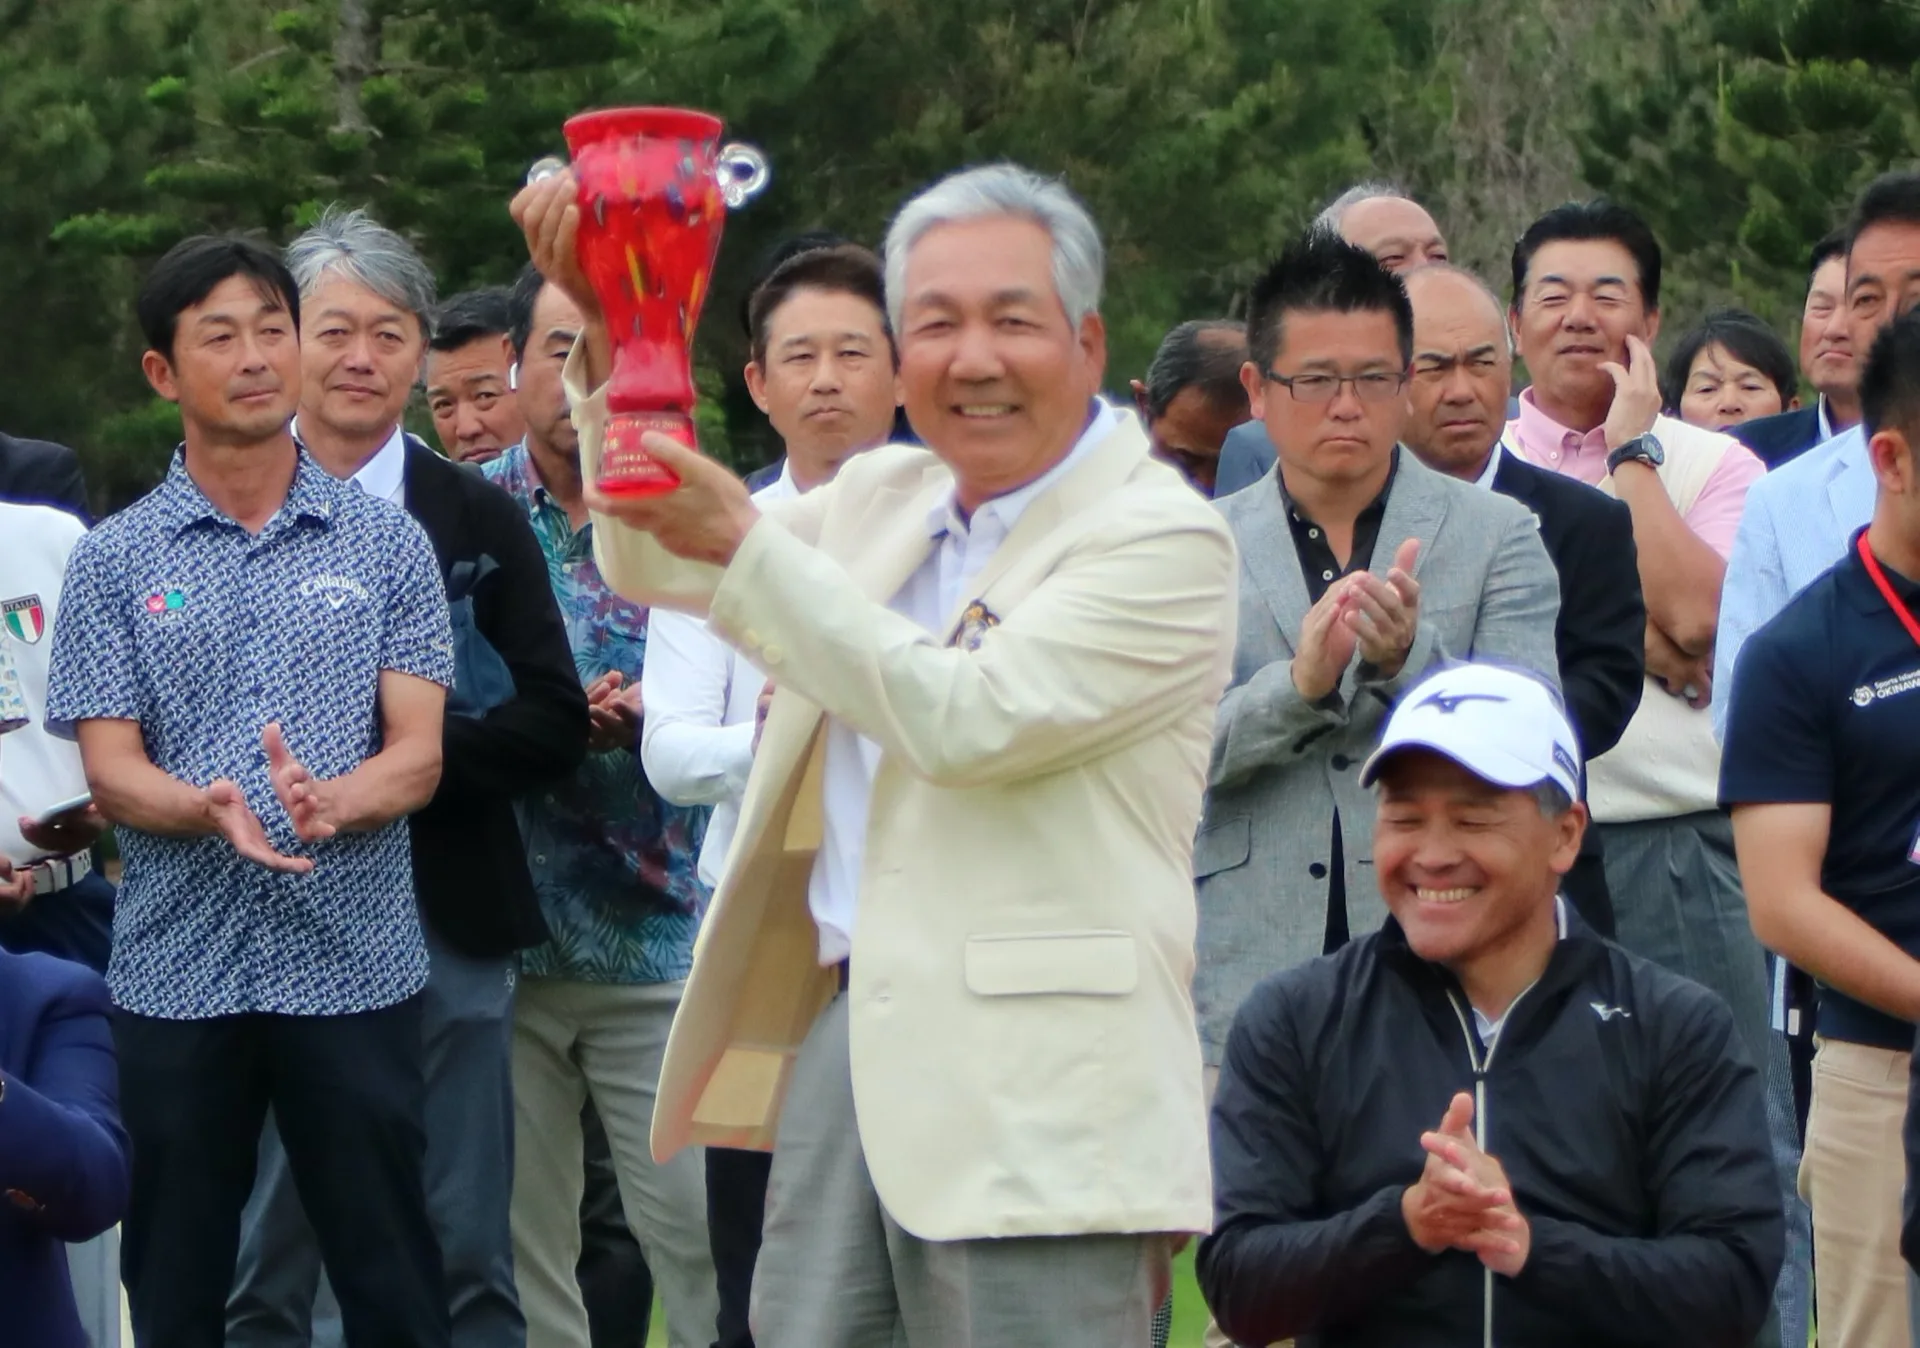 ゴルフ 金秀シニア沖縄オープンゴルフトーナメント19表彰式 スポーツコミッション沖縄